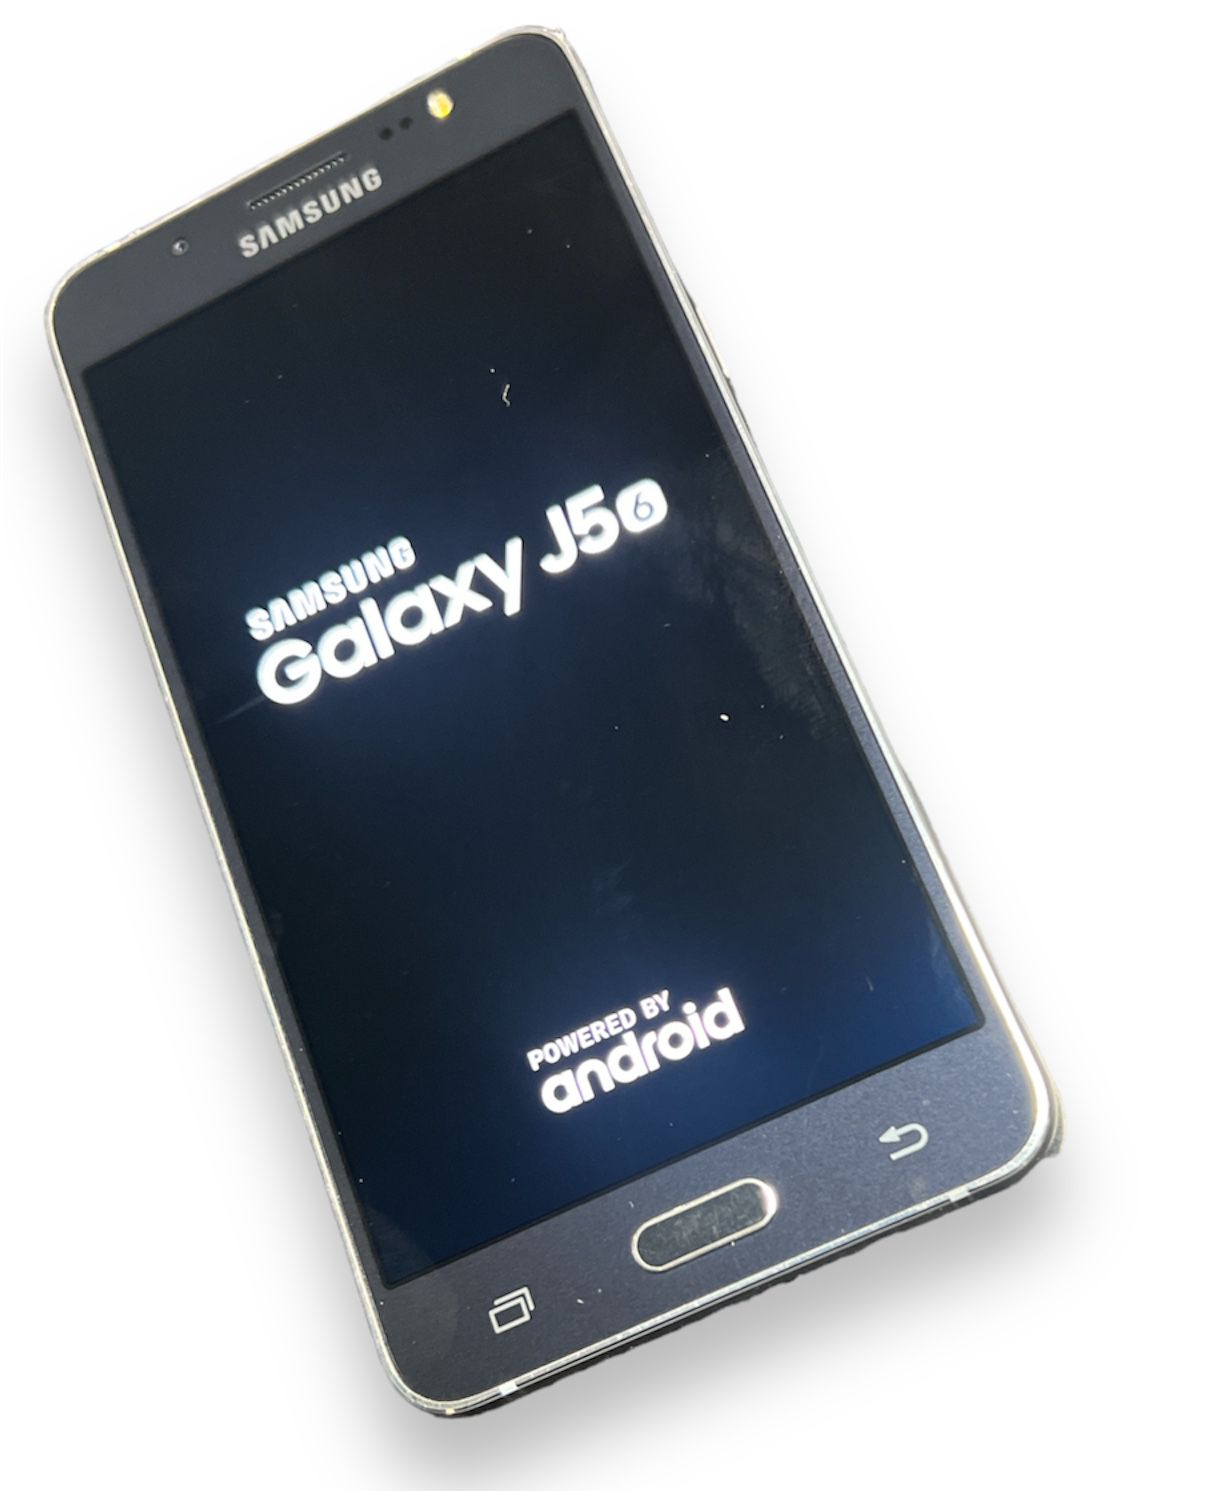 Samsung Galaxy J5 16gb - black